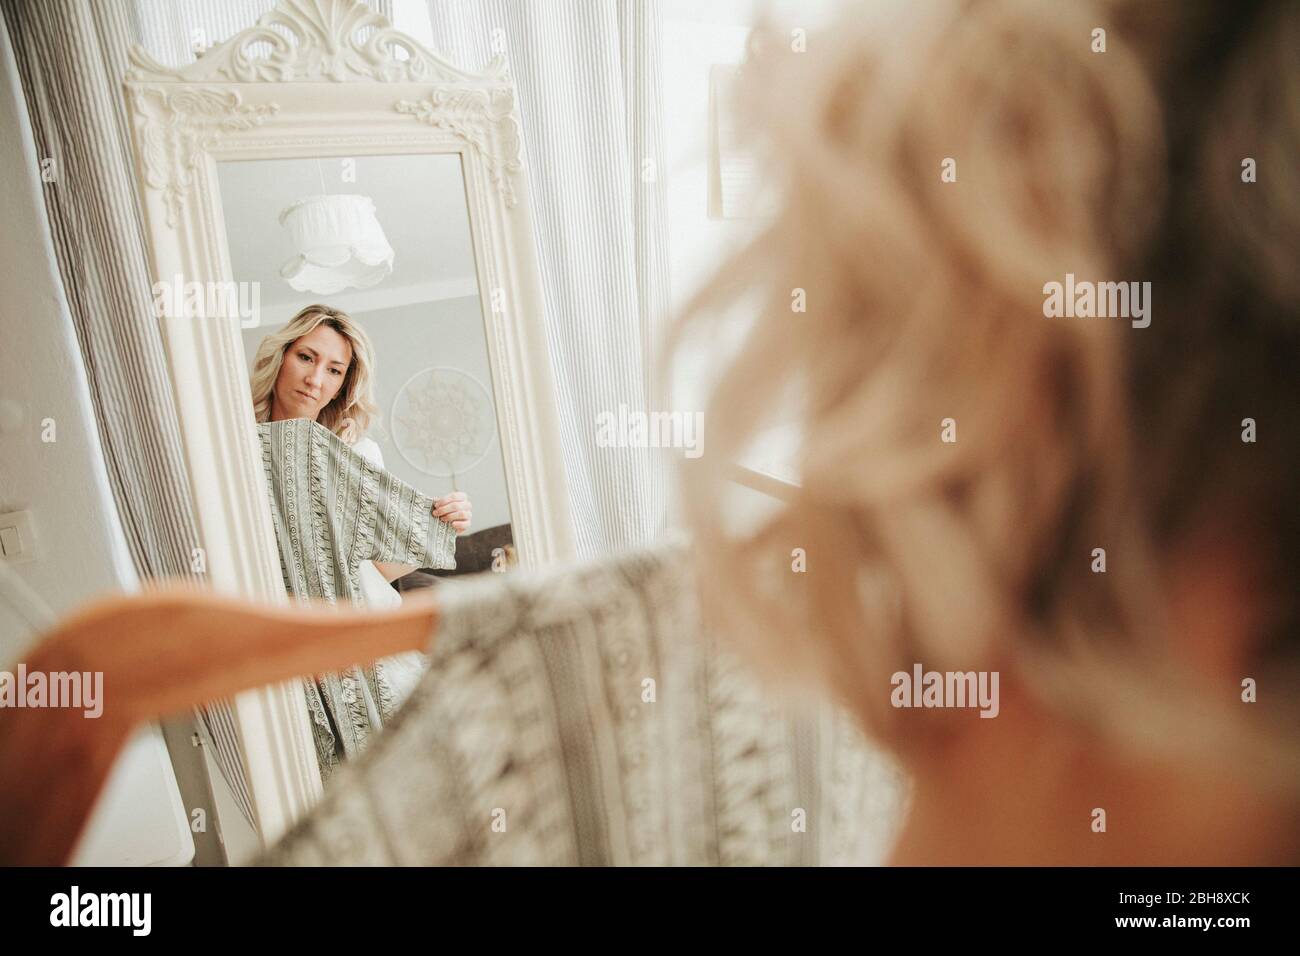 Frau steht vor dem Spiegel, kleidet sich an, unentschlossen Stock Photo